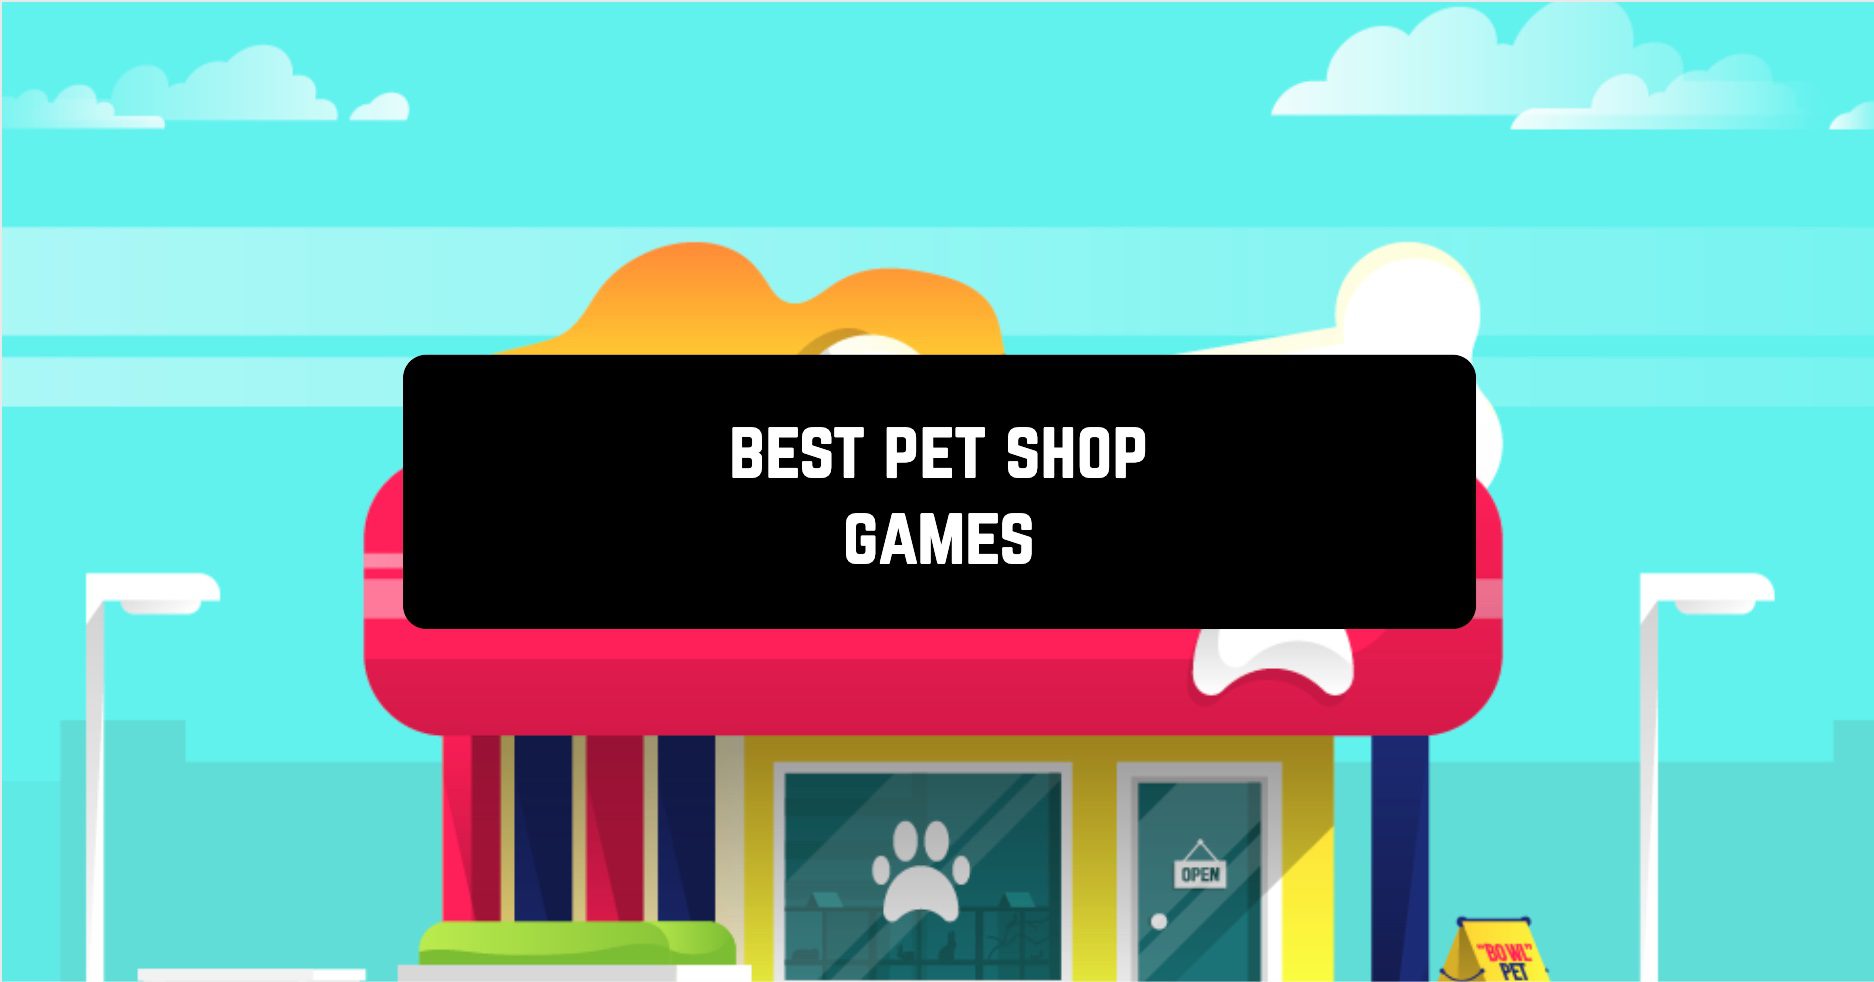 Best pet shop games